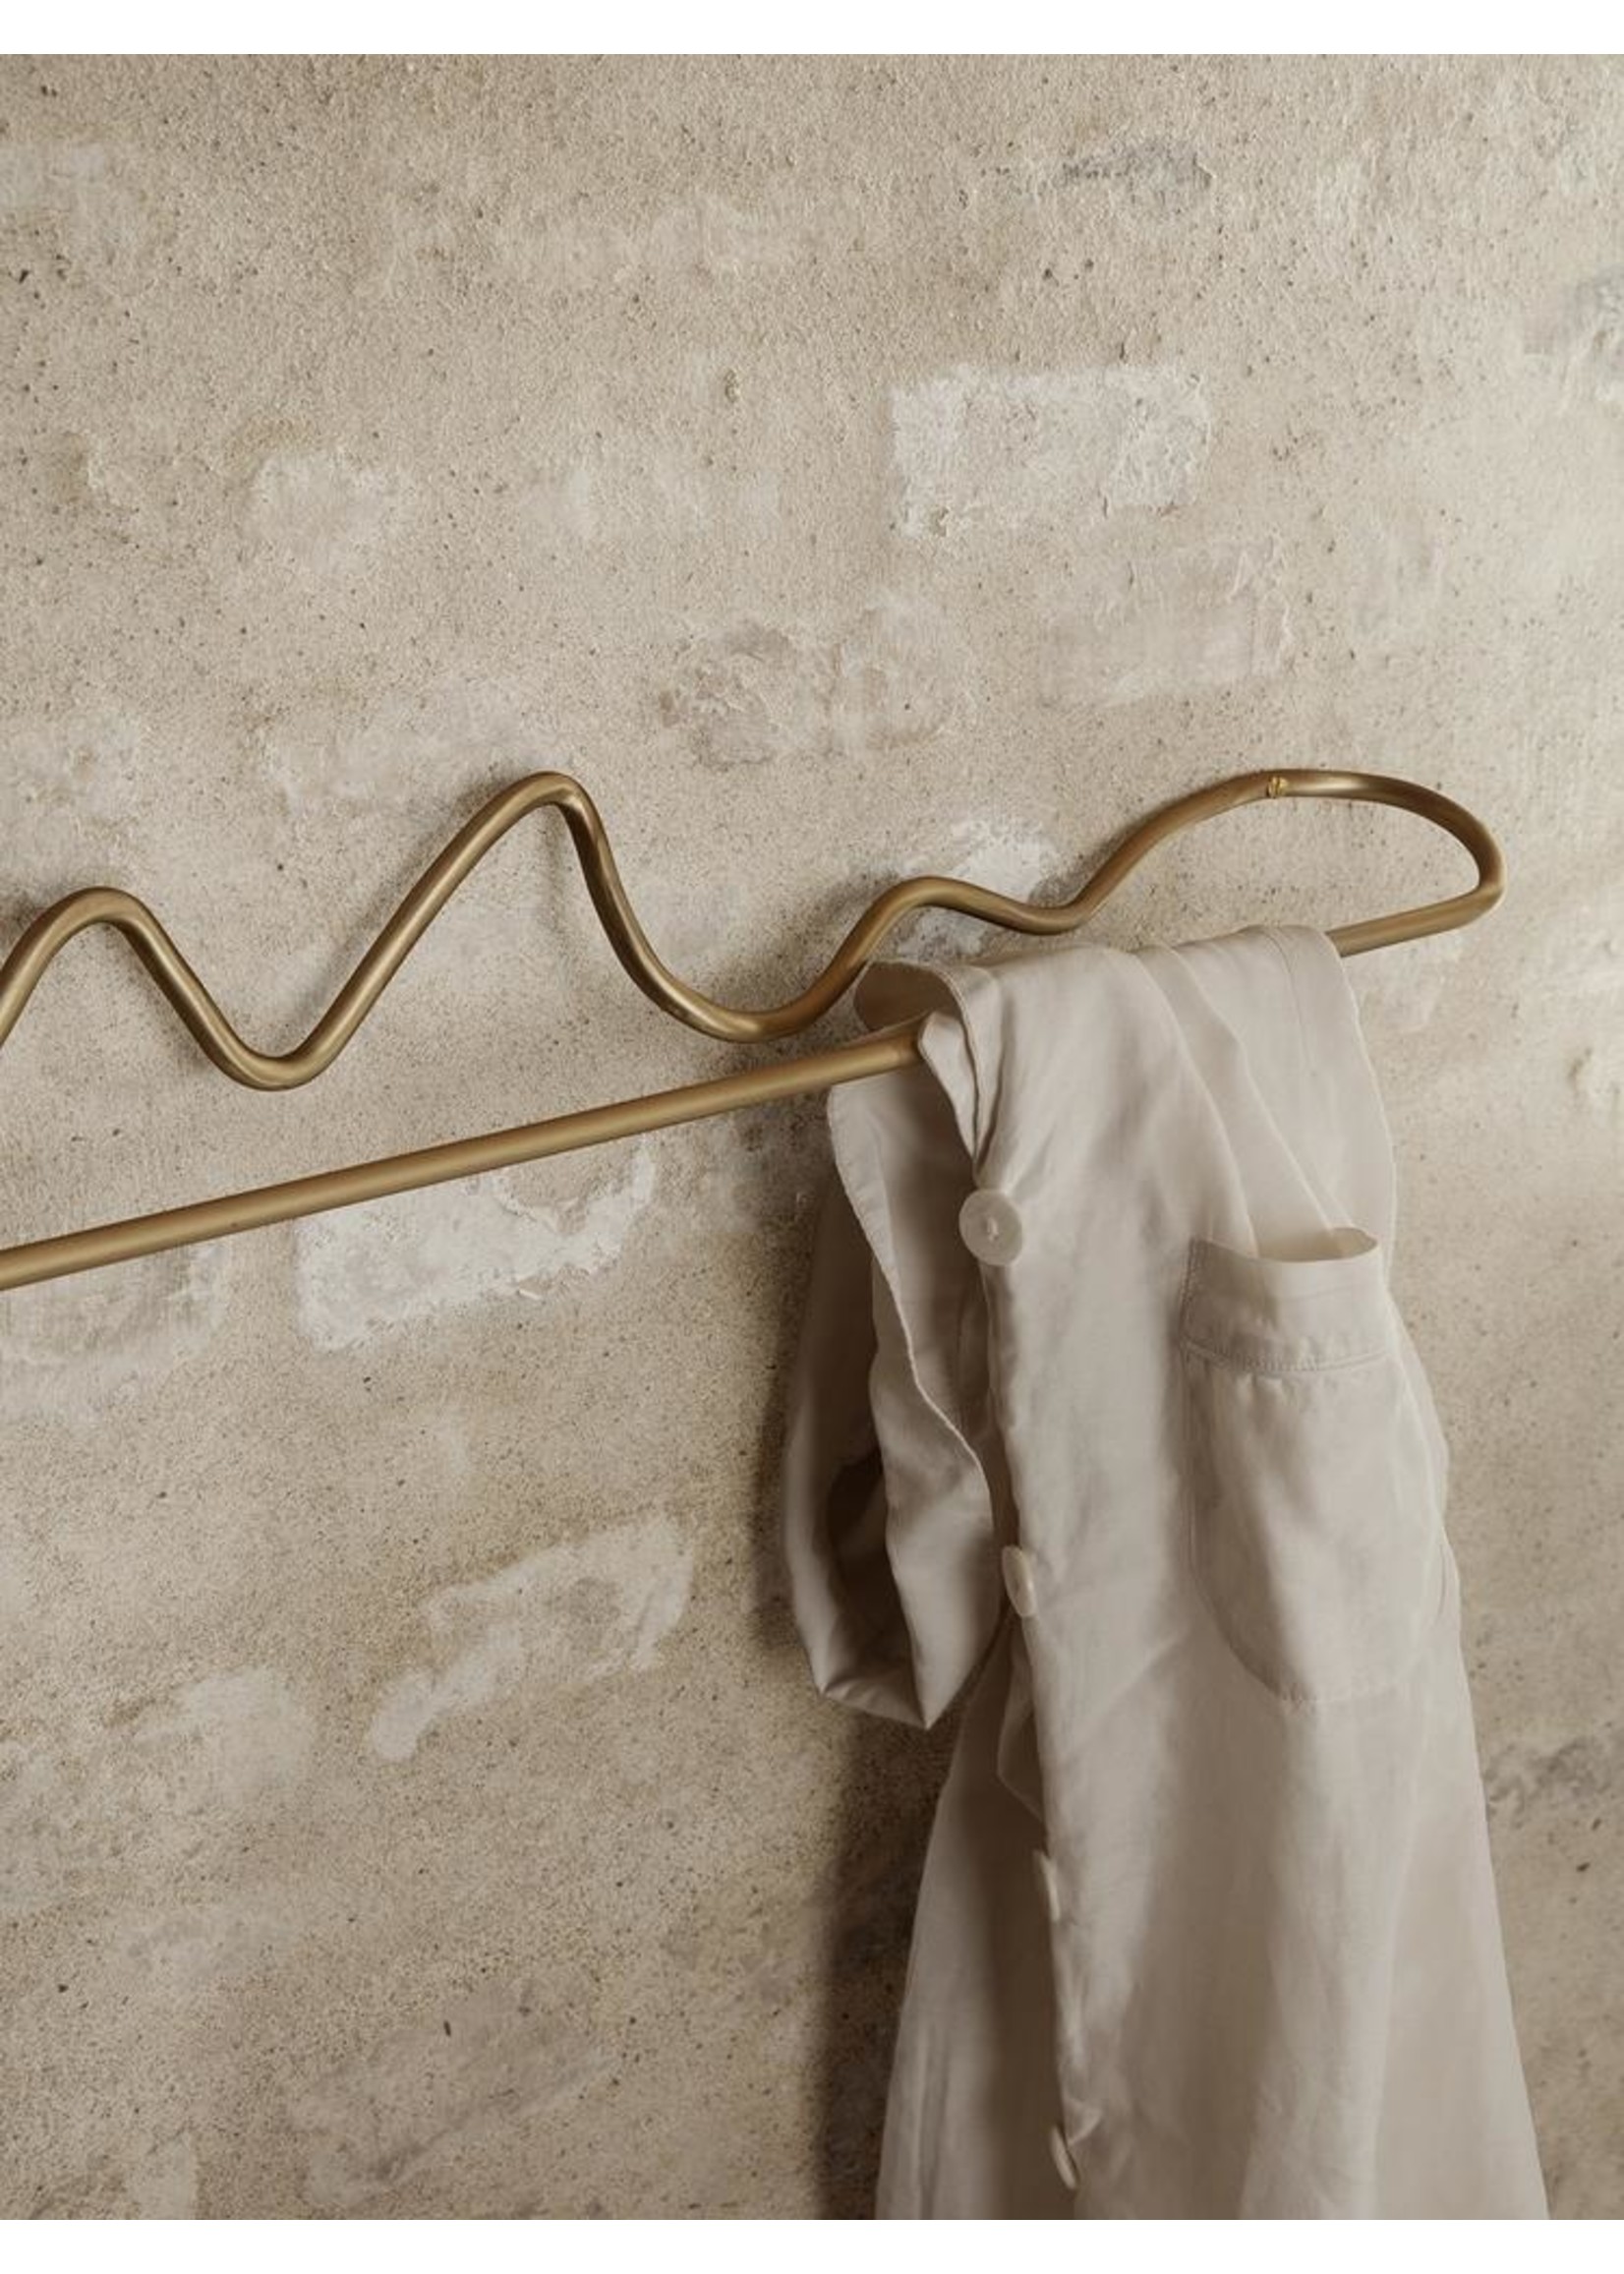 ferm LIVING ferm LIVING Curvature Towel Hanger - Brass